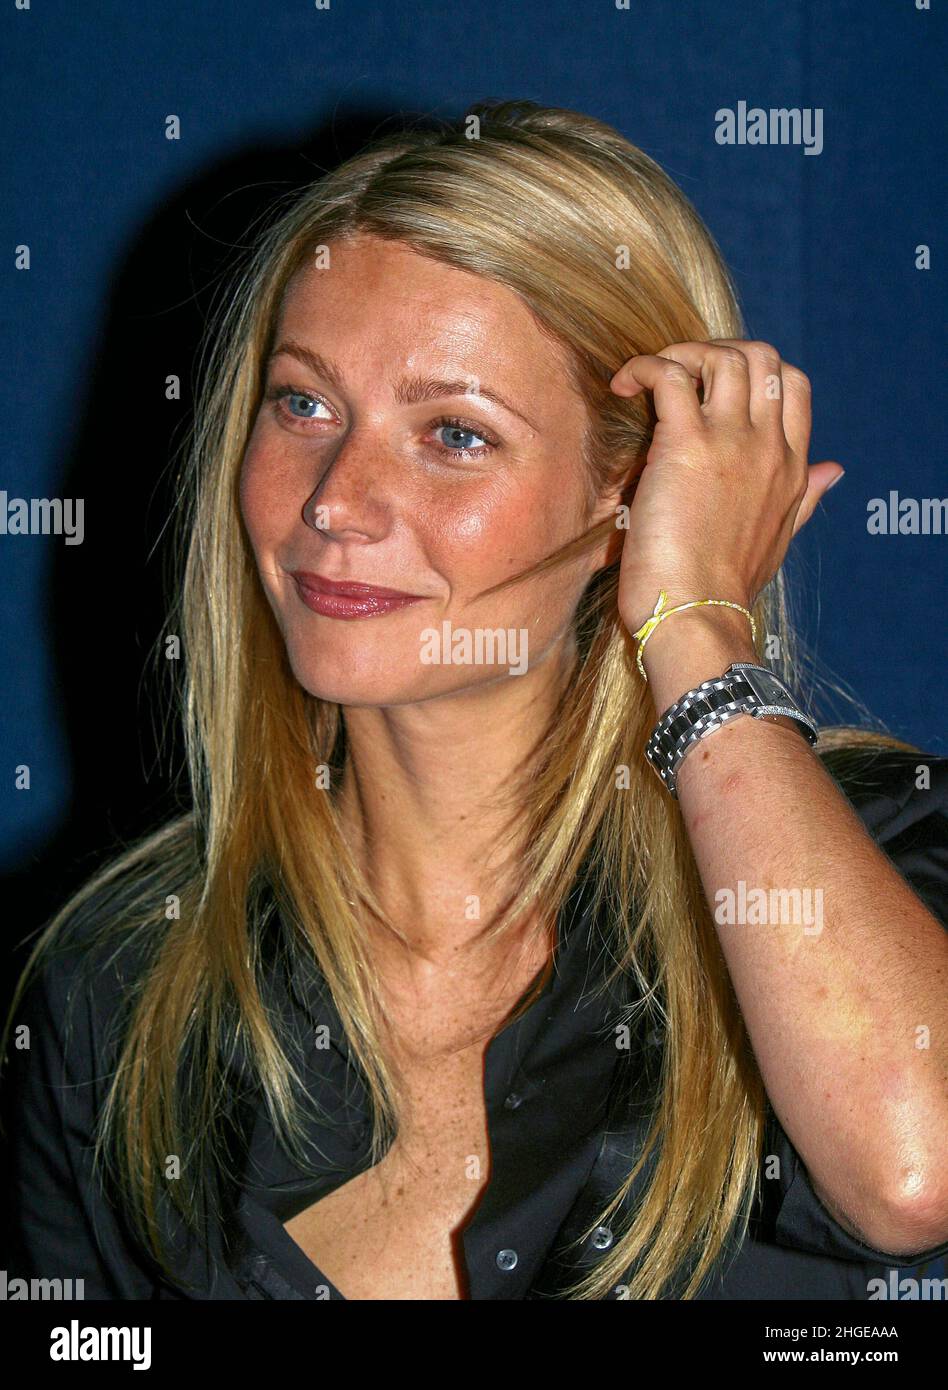 Gwyneth Paltrrow au Festival du film américain de deauville, France 3rd sept 2002 Banque D'Images